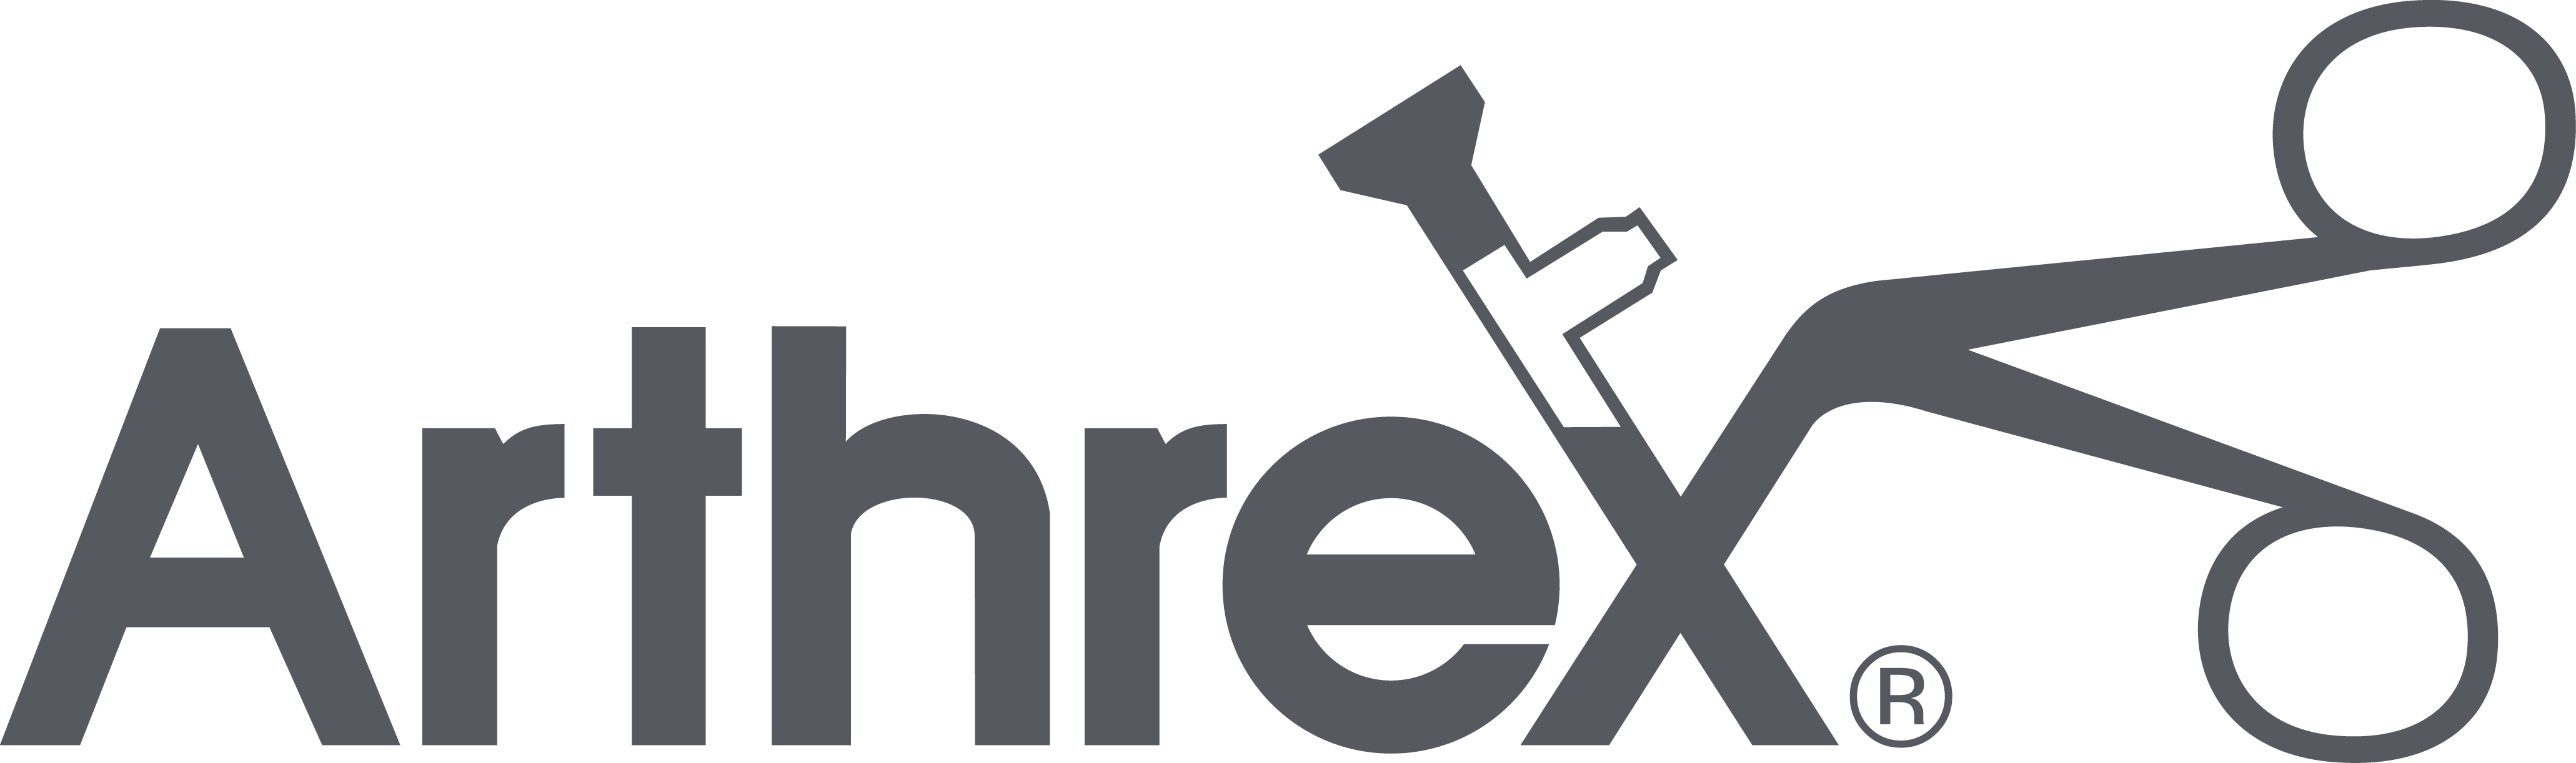 Arthrex_Logo_titanium_CMYK